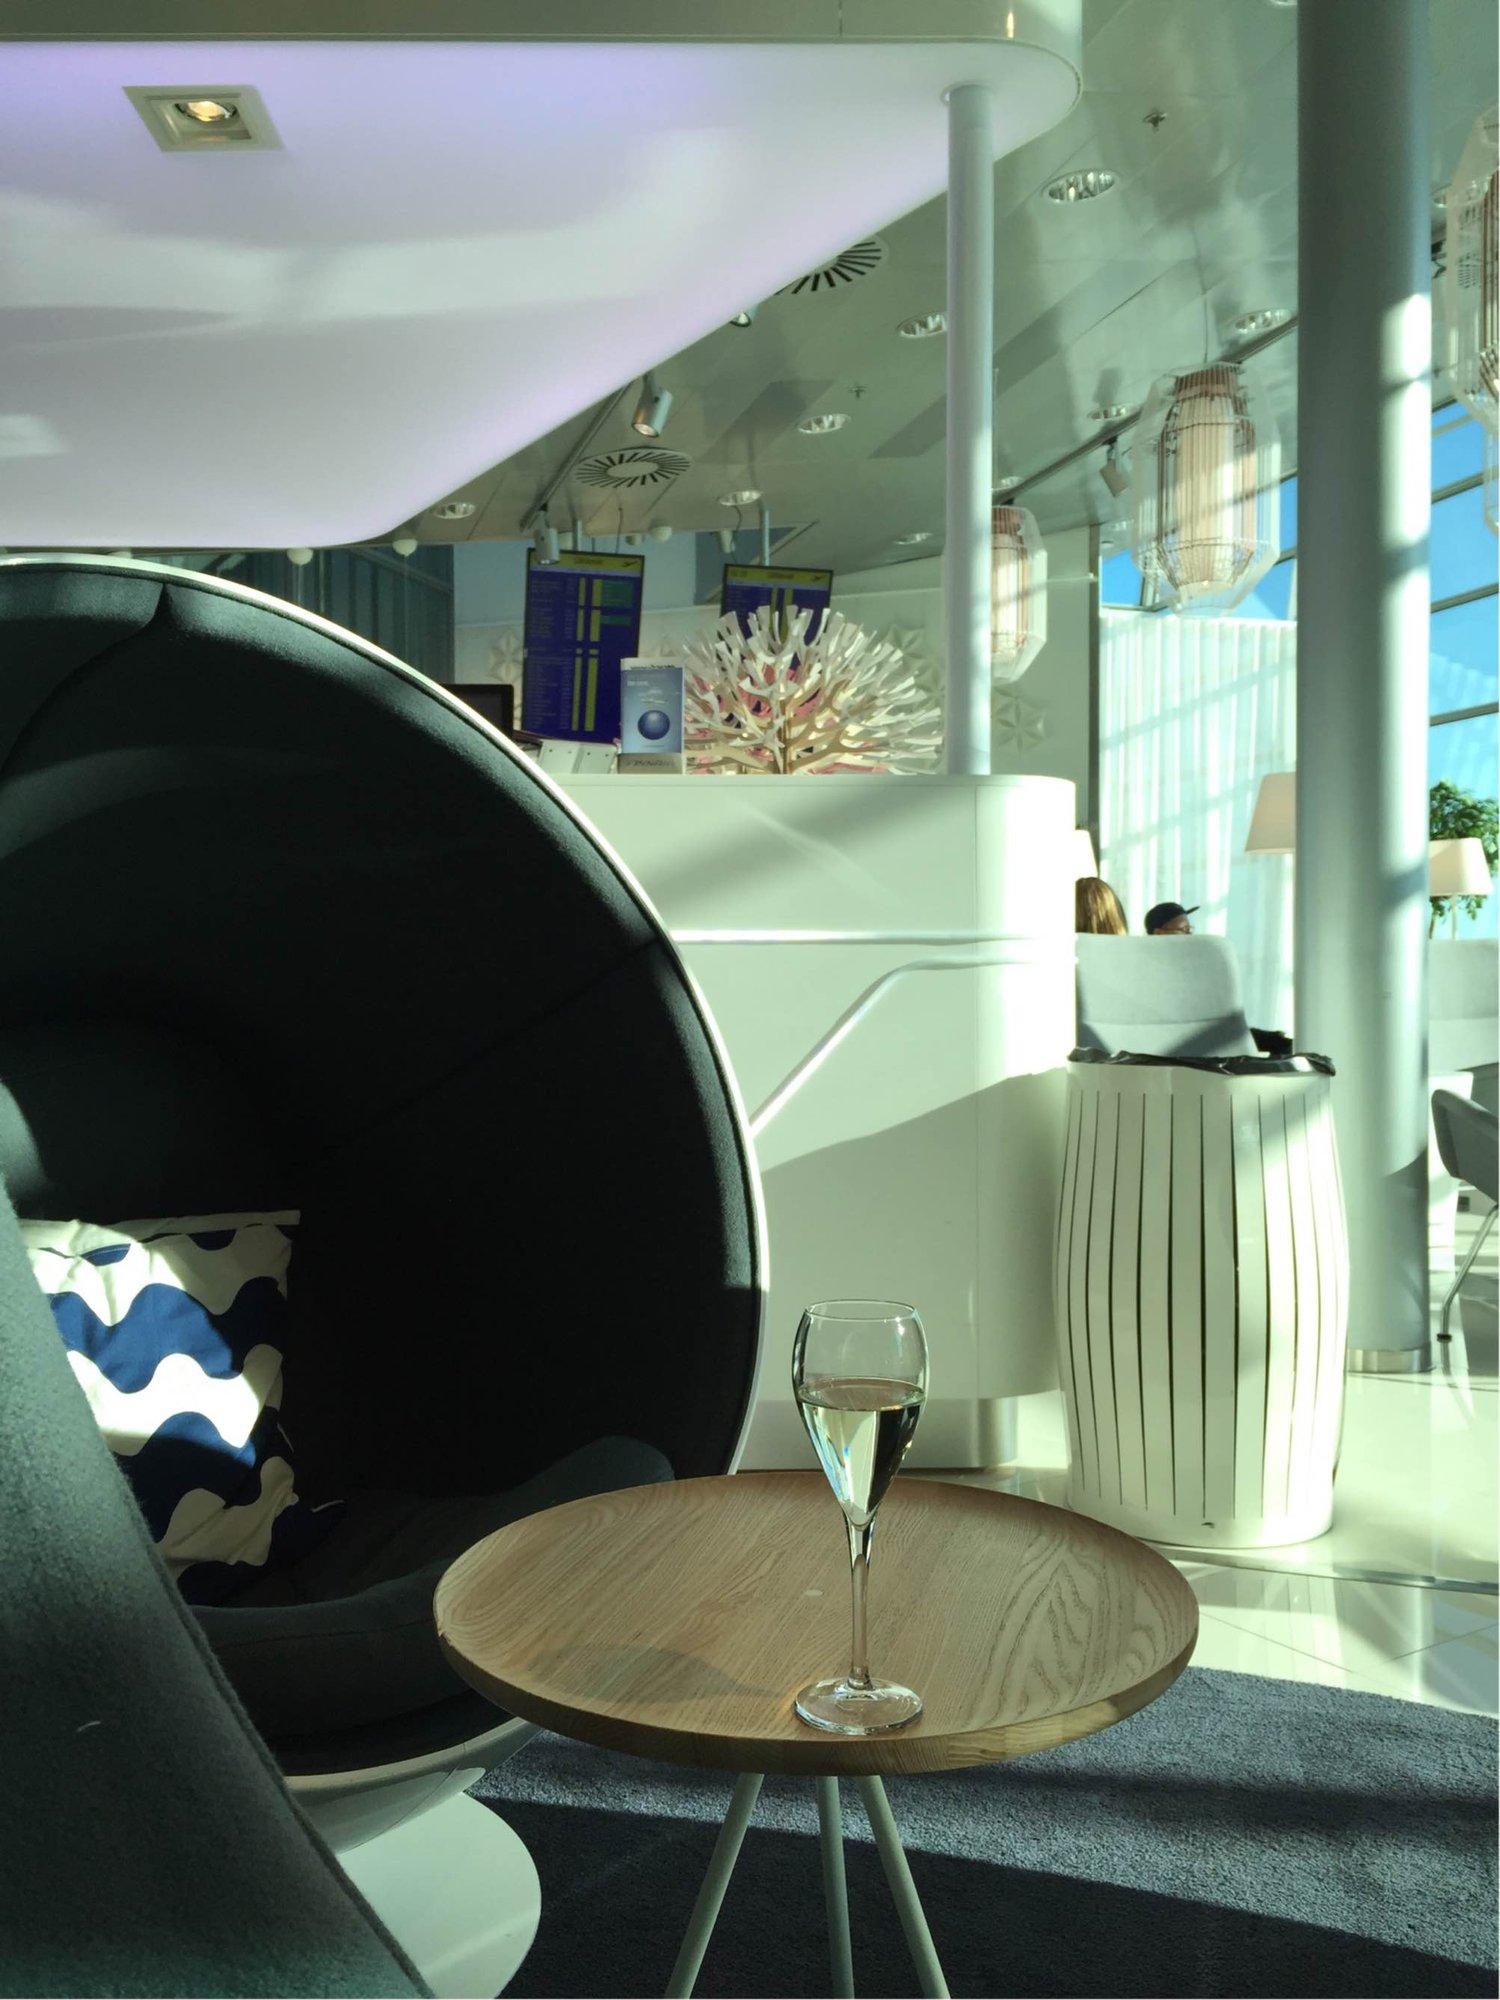 Finnair Lounge image 2 of 38